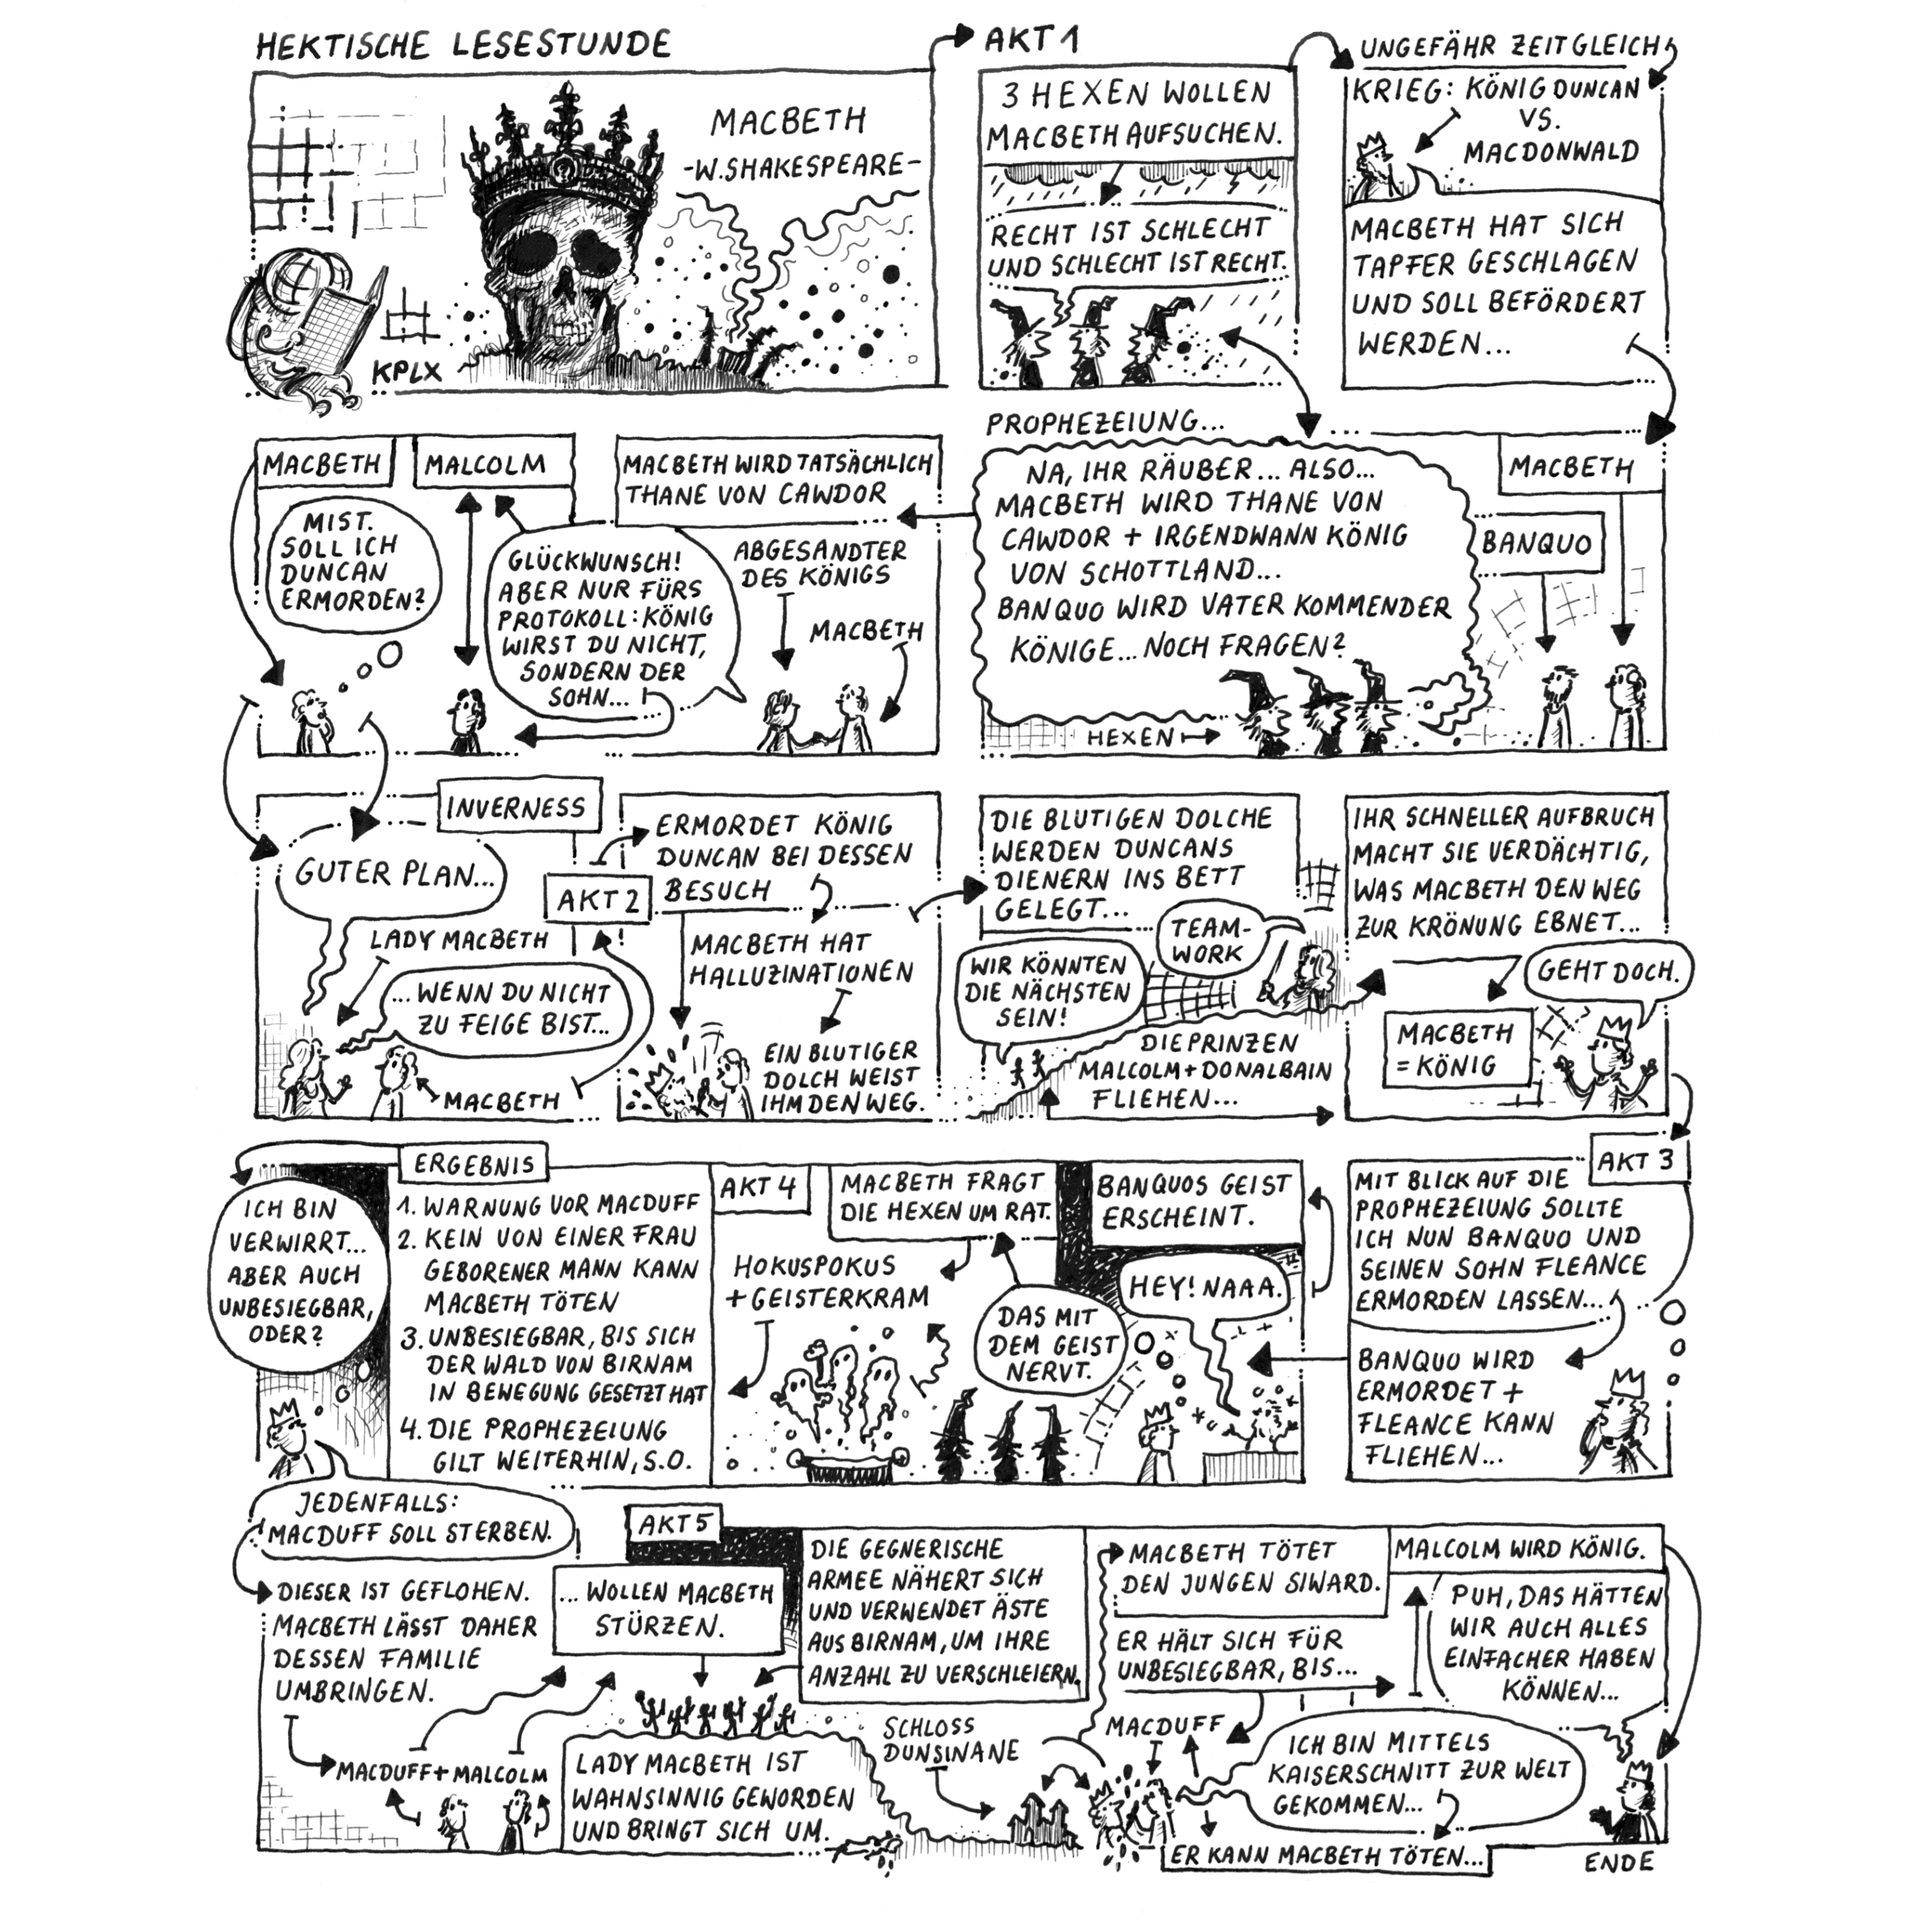 Tusche+A4+Comic: Panels, die miteinander verbunden sind und hektisch Macbeth von Shakespeare  erzähl